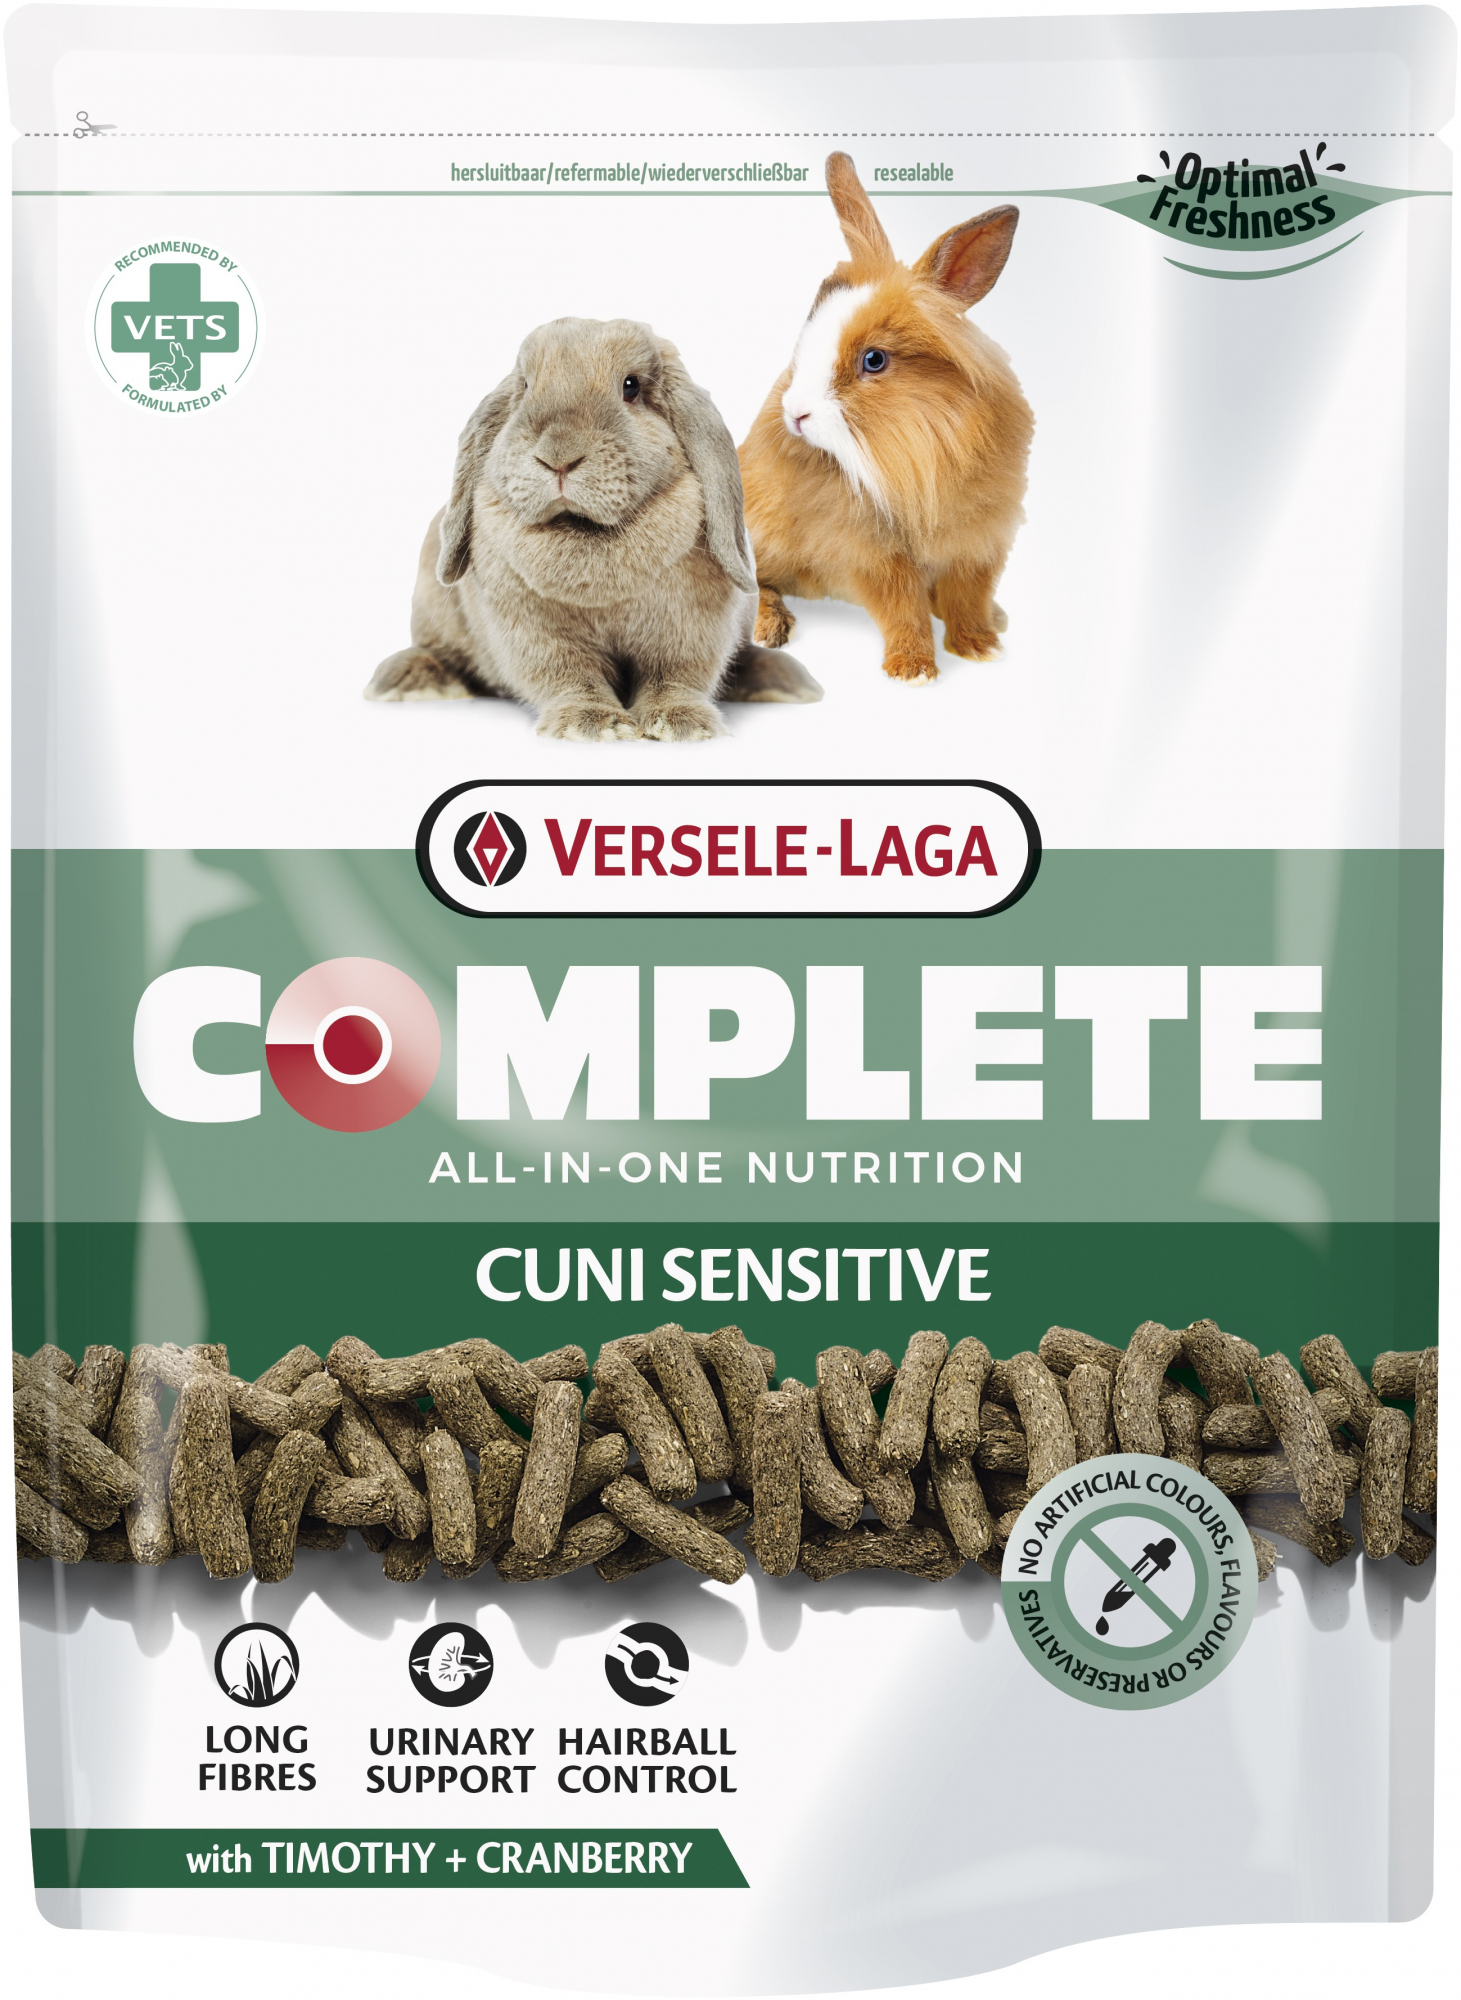 Versele Laga Complete Cuni Sensitive voor gevoelige konijnen